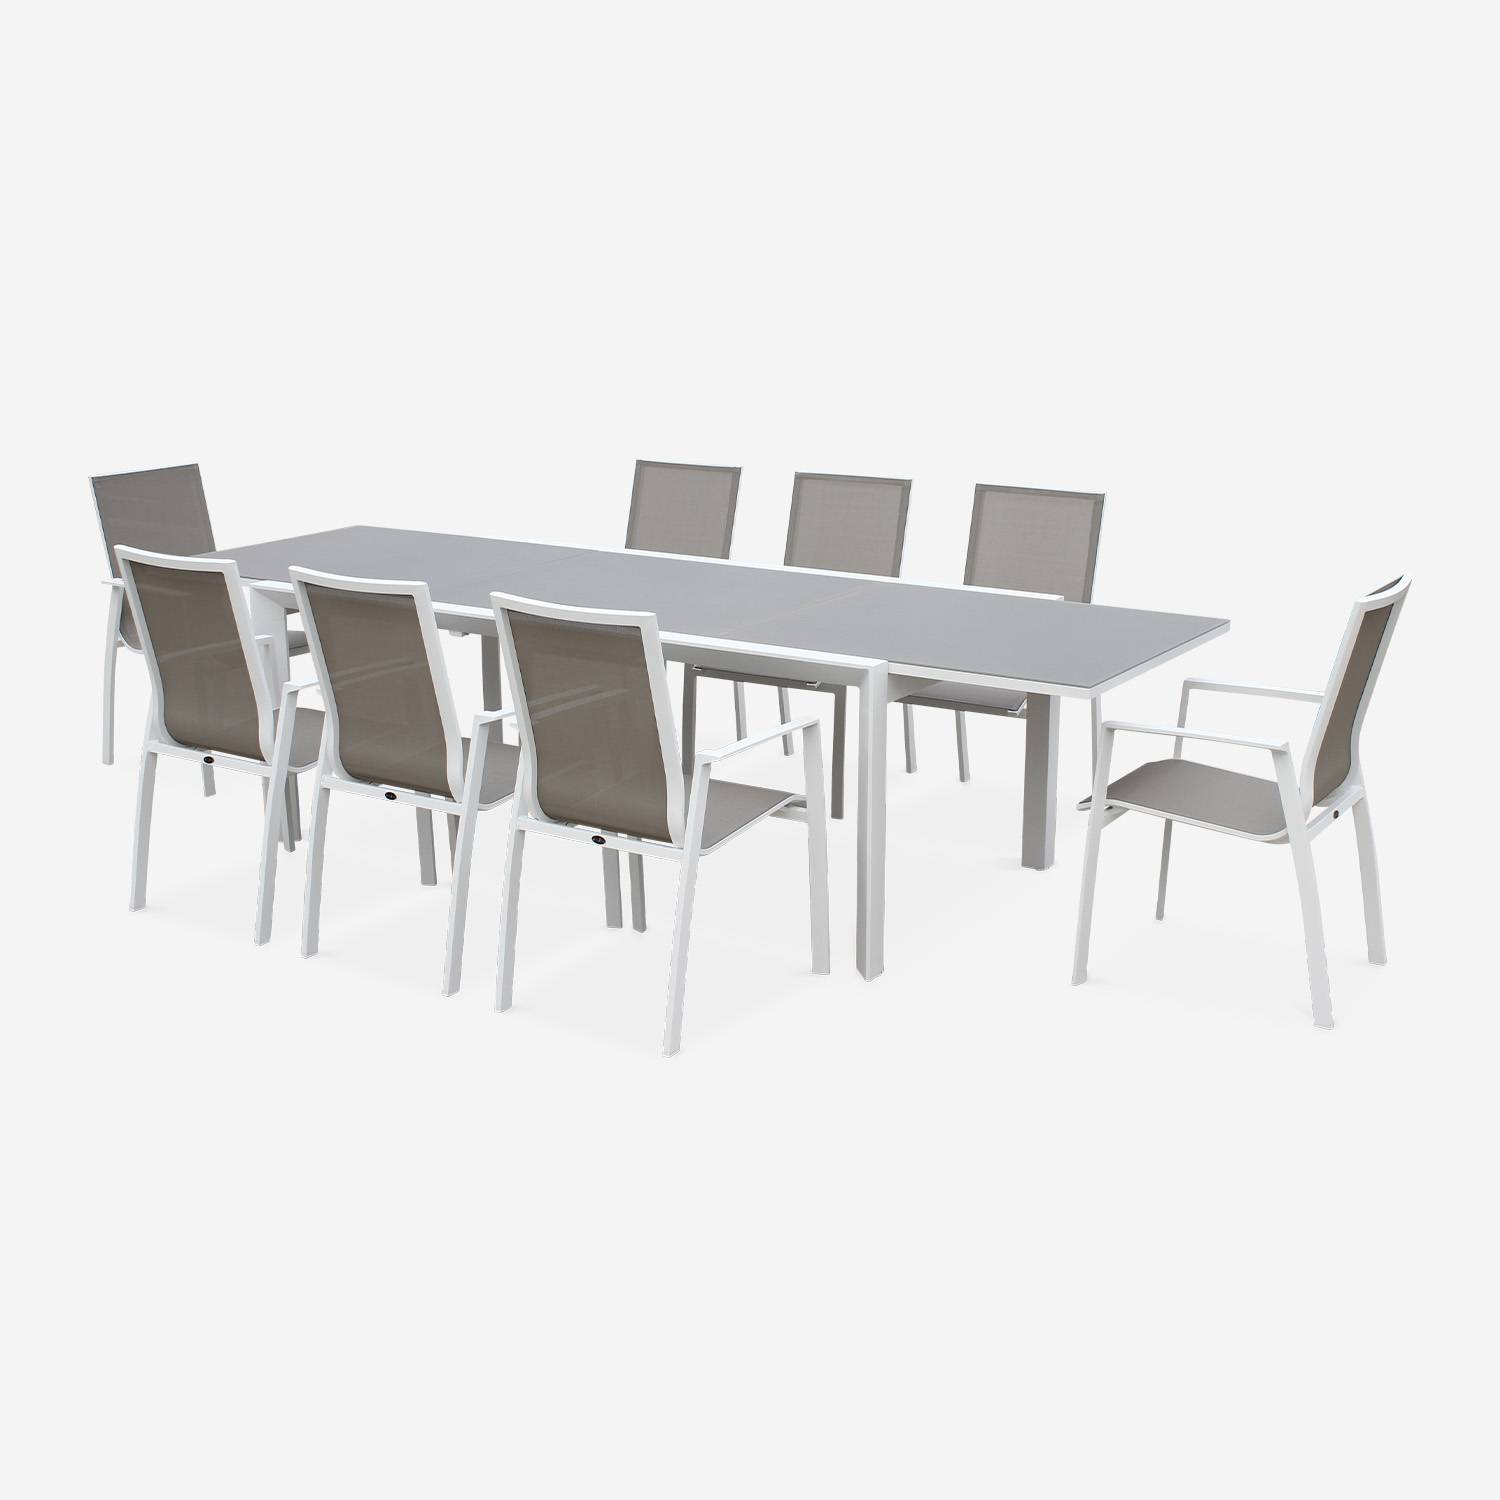 Tavolo da giardino con tavolo allungabile - modello: Washington, colore: Talpa - Tavolo in alluminio, dimensioni: 200/300cm, ripiano in vetro smerigliato, prolunga e 8 poltrone in textilene Photo2